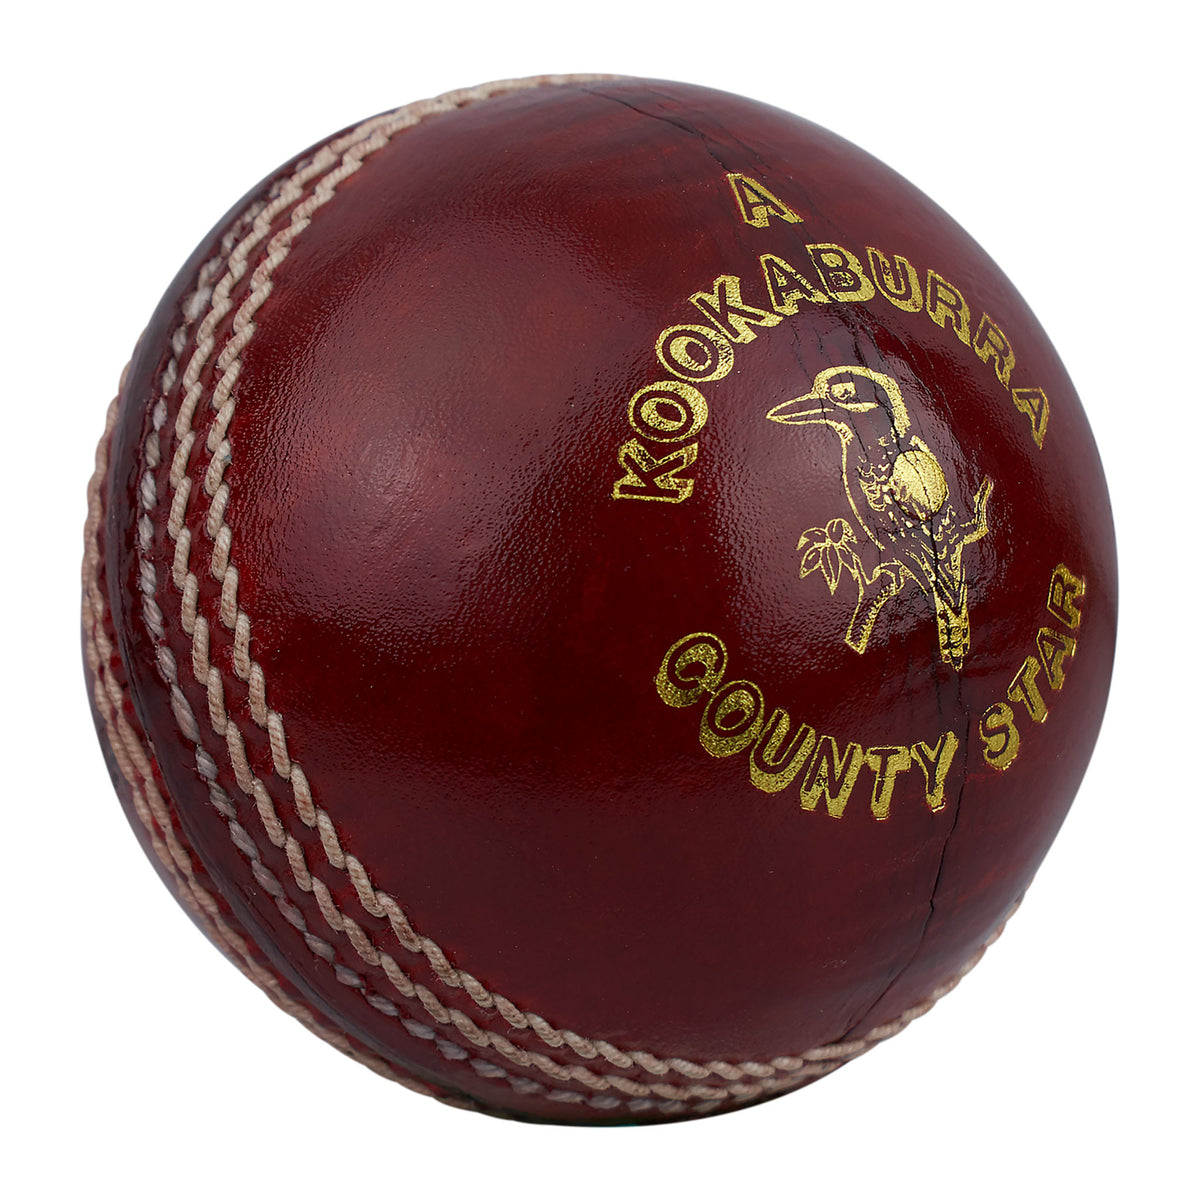 Kookaburra County Star Cricket Ball 5 1/2 oz